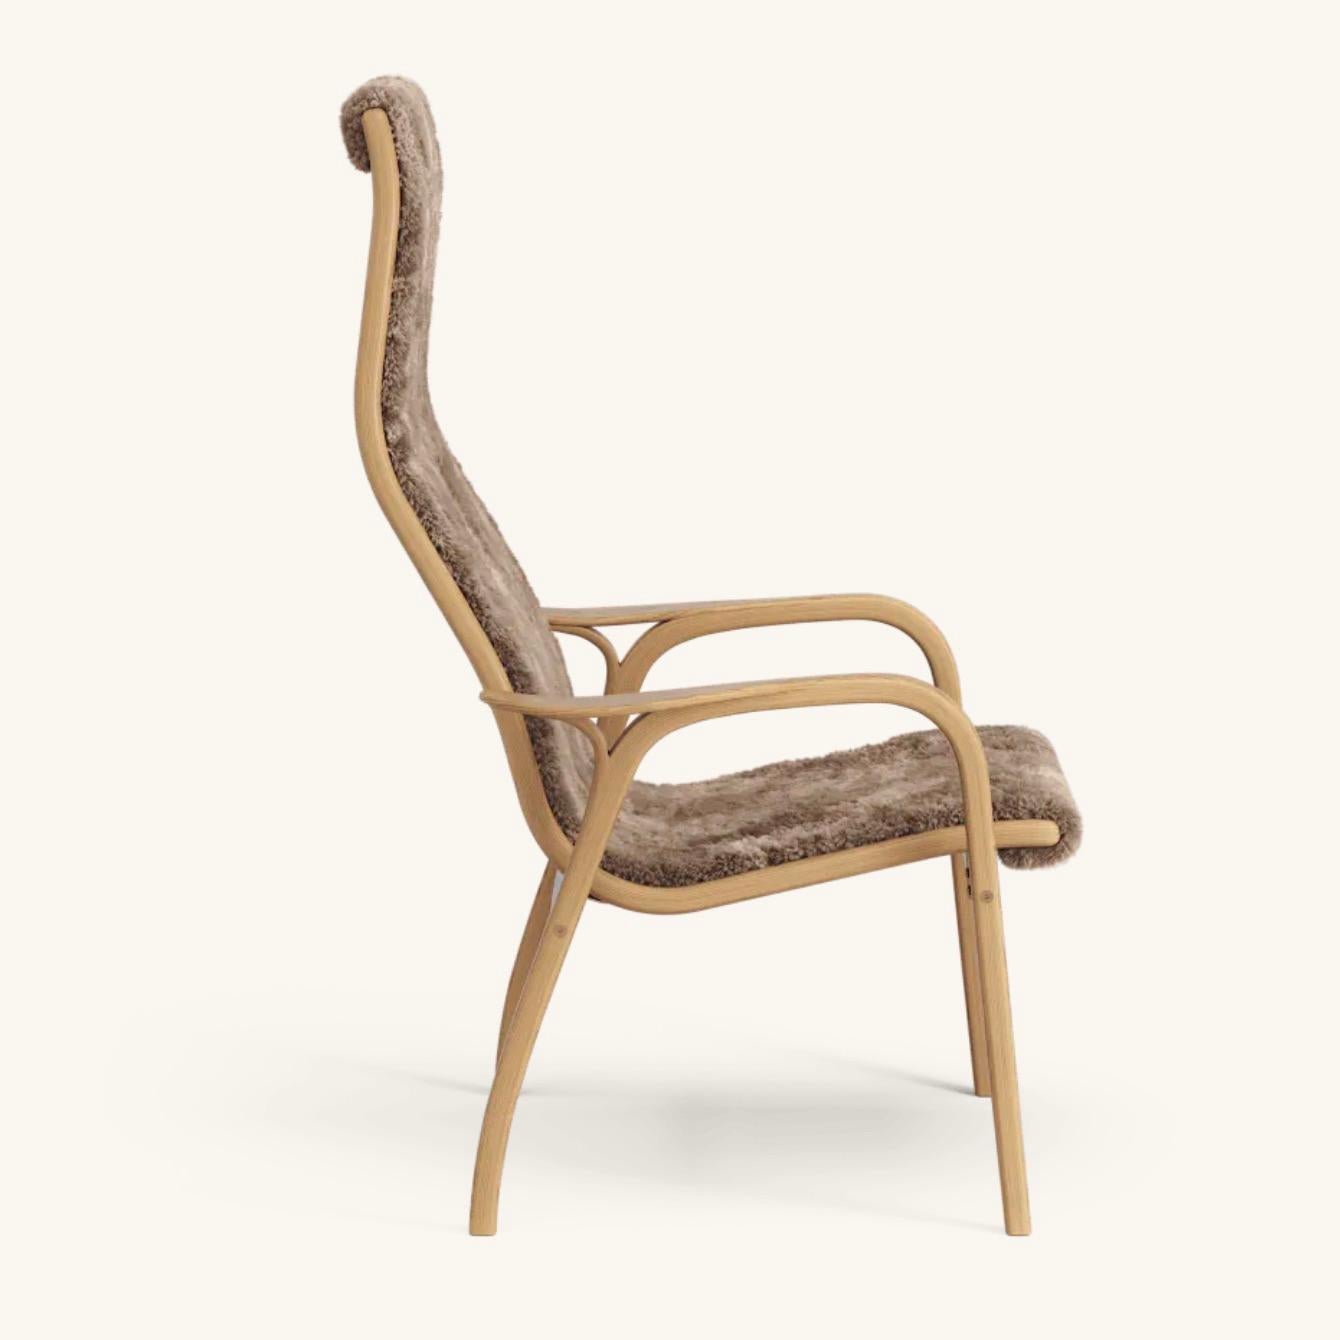 Yngve Ekström Lamino Sessel von Swedese in Eiche und 'Sahara' Schafsleder. Neu, Entwurf von 1956.

Der Lamino von Yngve Ekström ist einer der kultigsten skandinavischen Sessel. Dieser 1956 entworfene Stuhl ist nie aus der Mode gekommen. Durch die